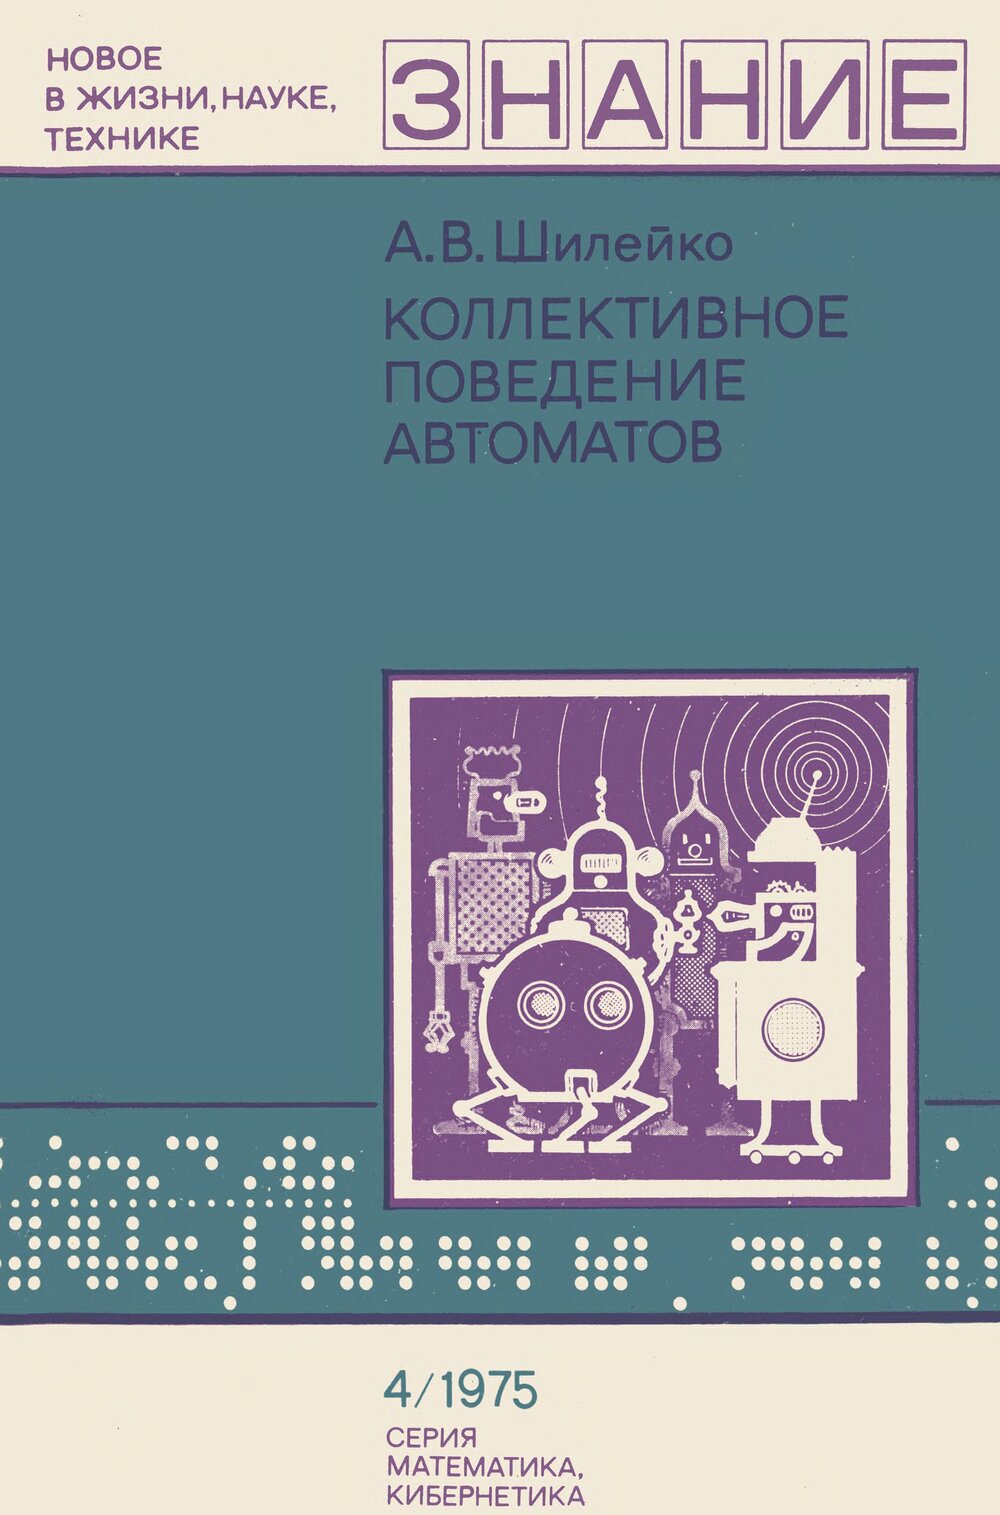 Обложка книги "Коллективное поведение автоматов"